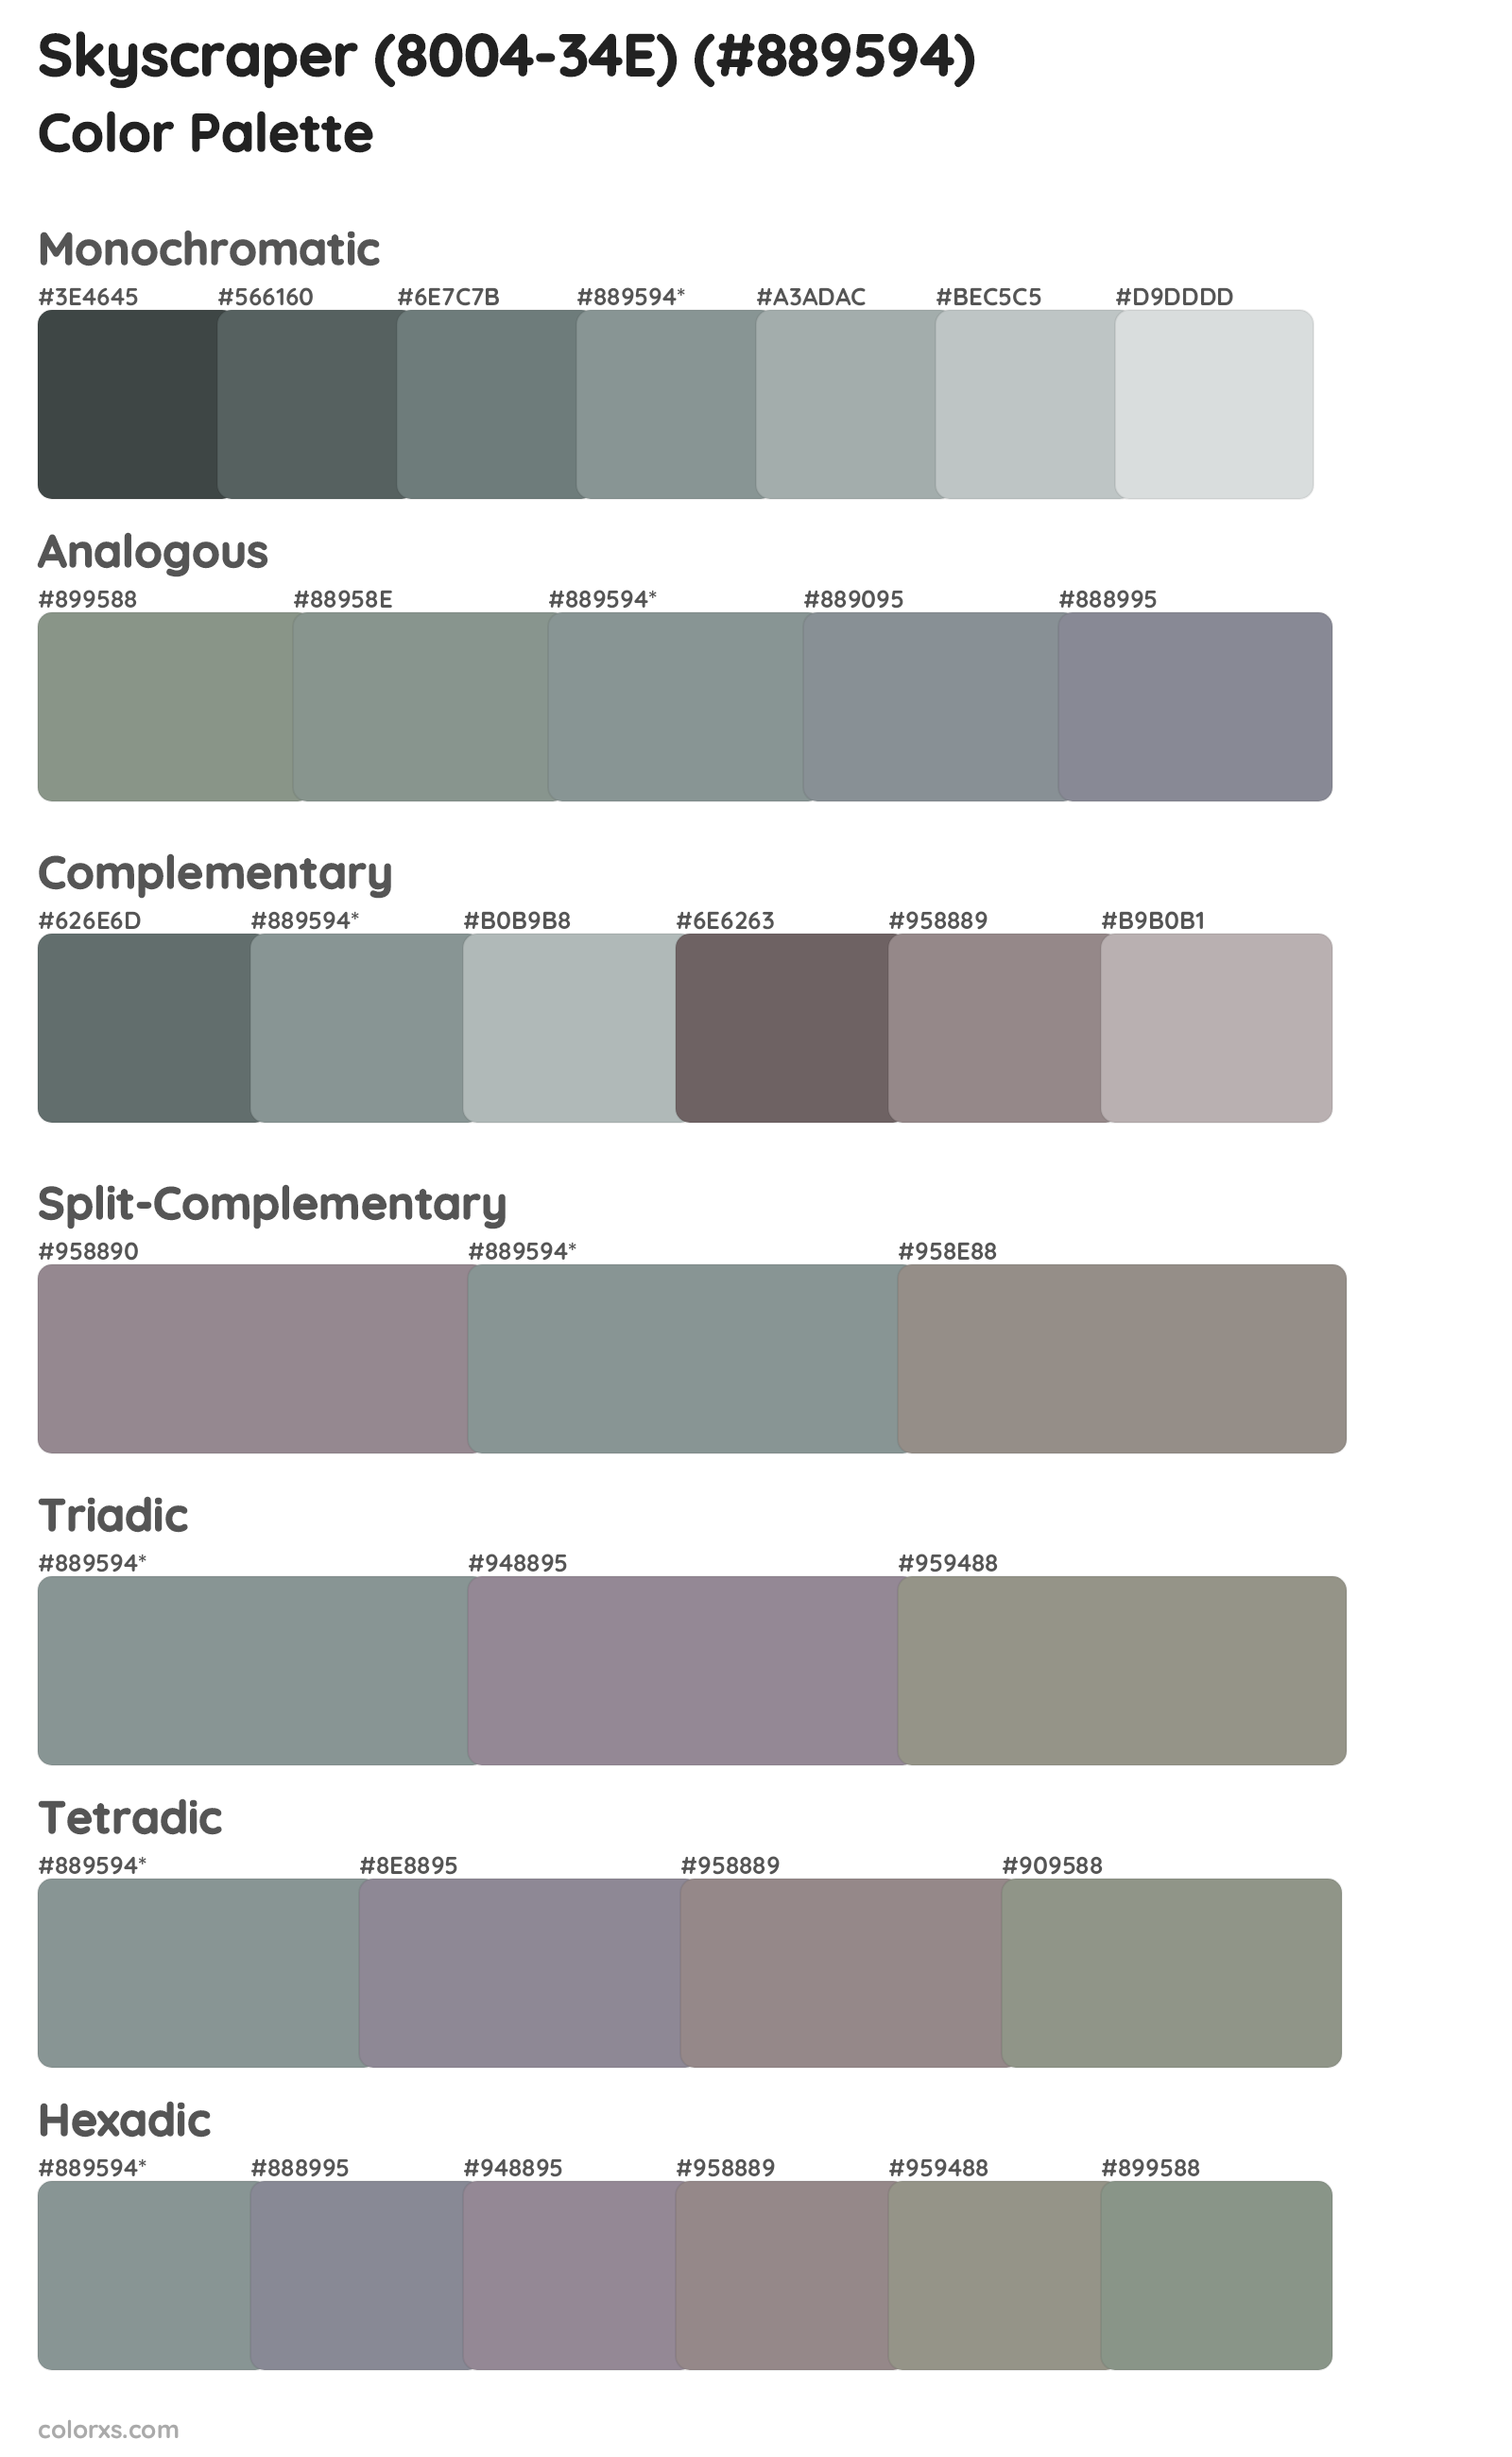 Skyscraper (8004-34E) Color Scheme Palettes